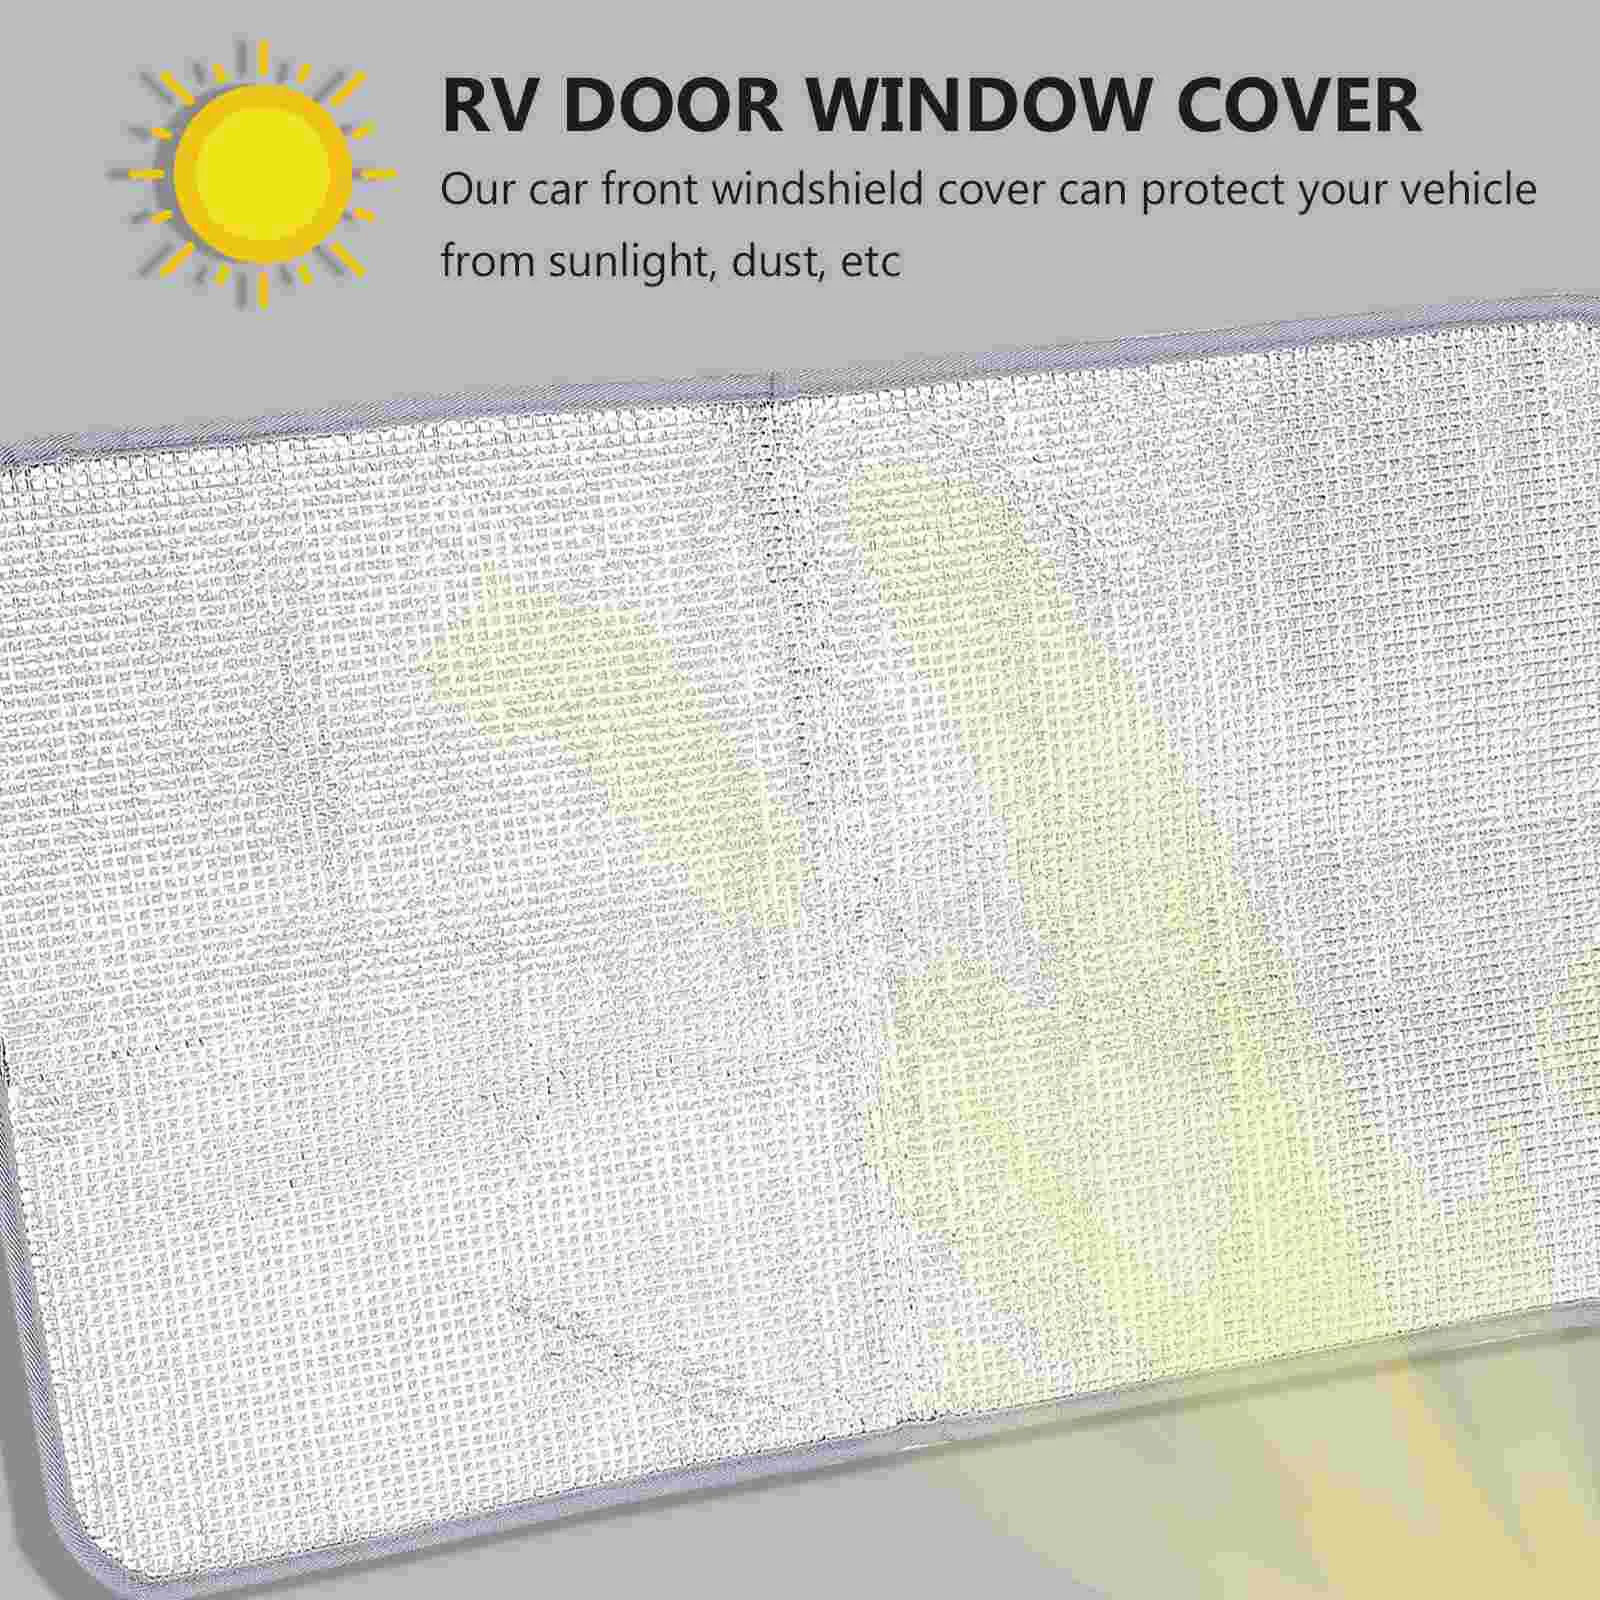 Крышка лобового стекла, плотные шторы, солнцезащитный козырек, шторка для двери прицепа для автомобиля Изображение 1